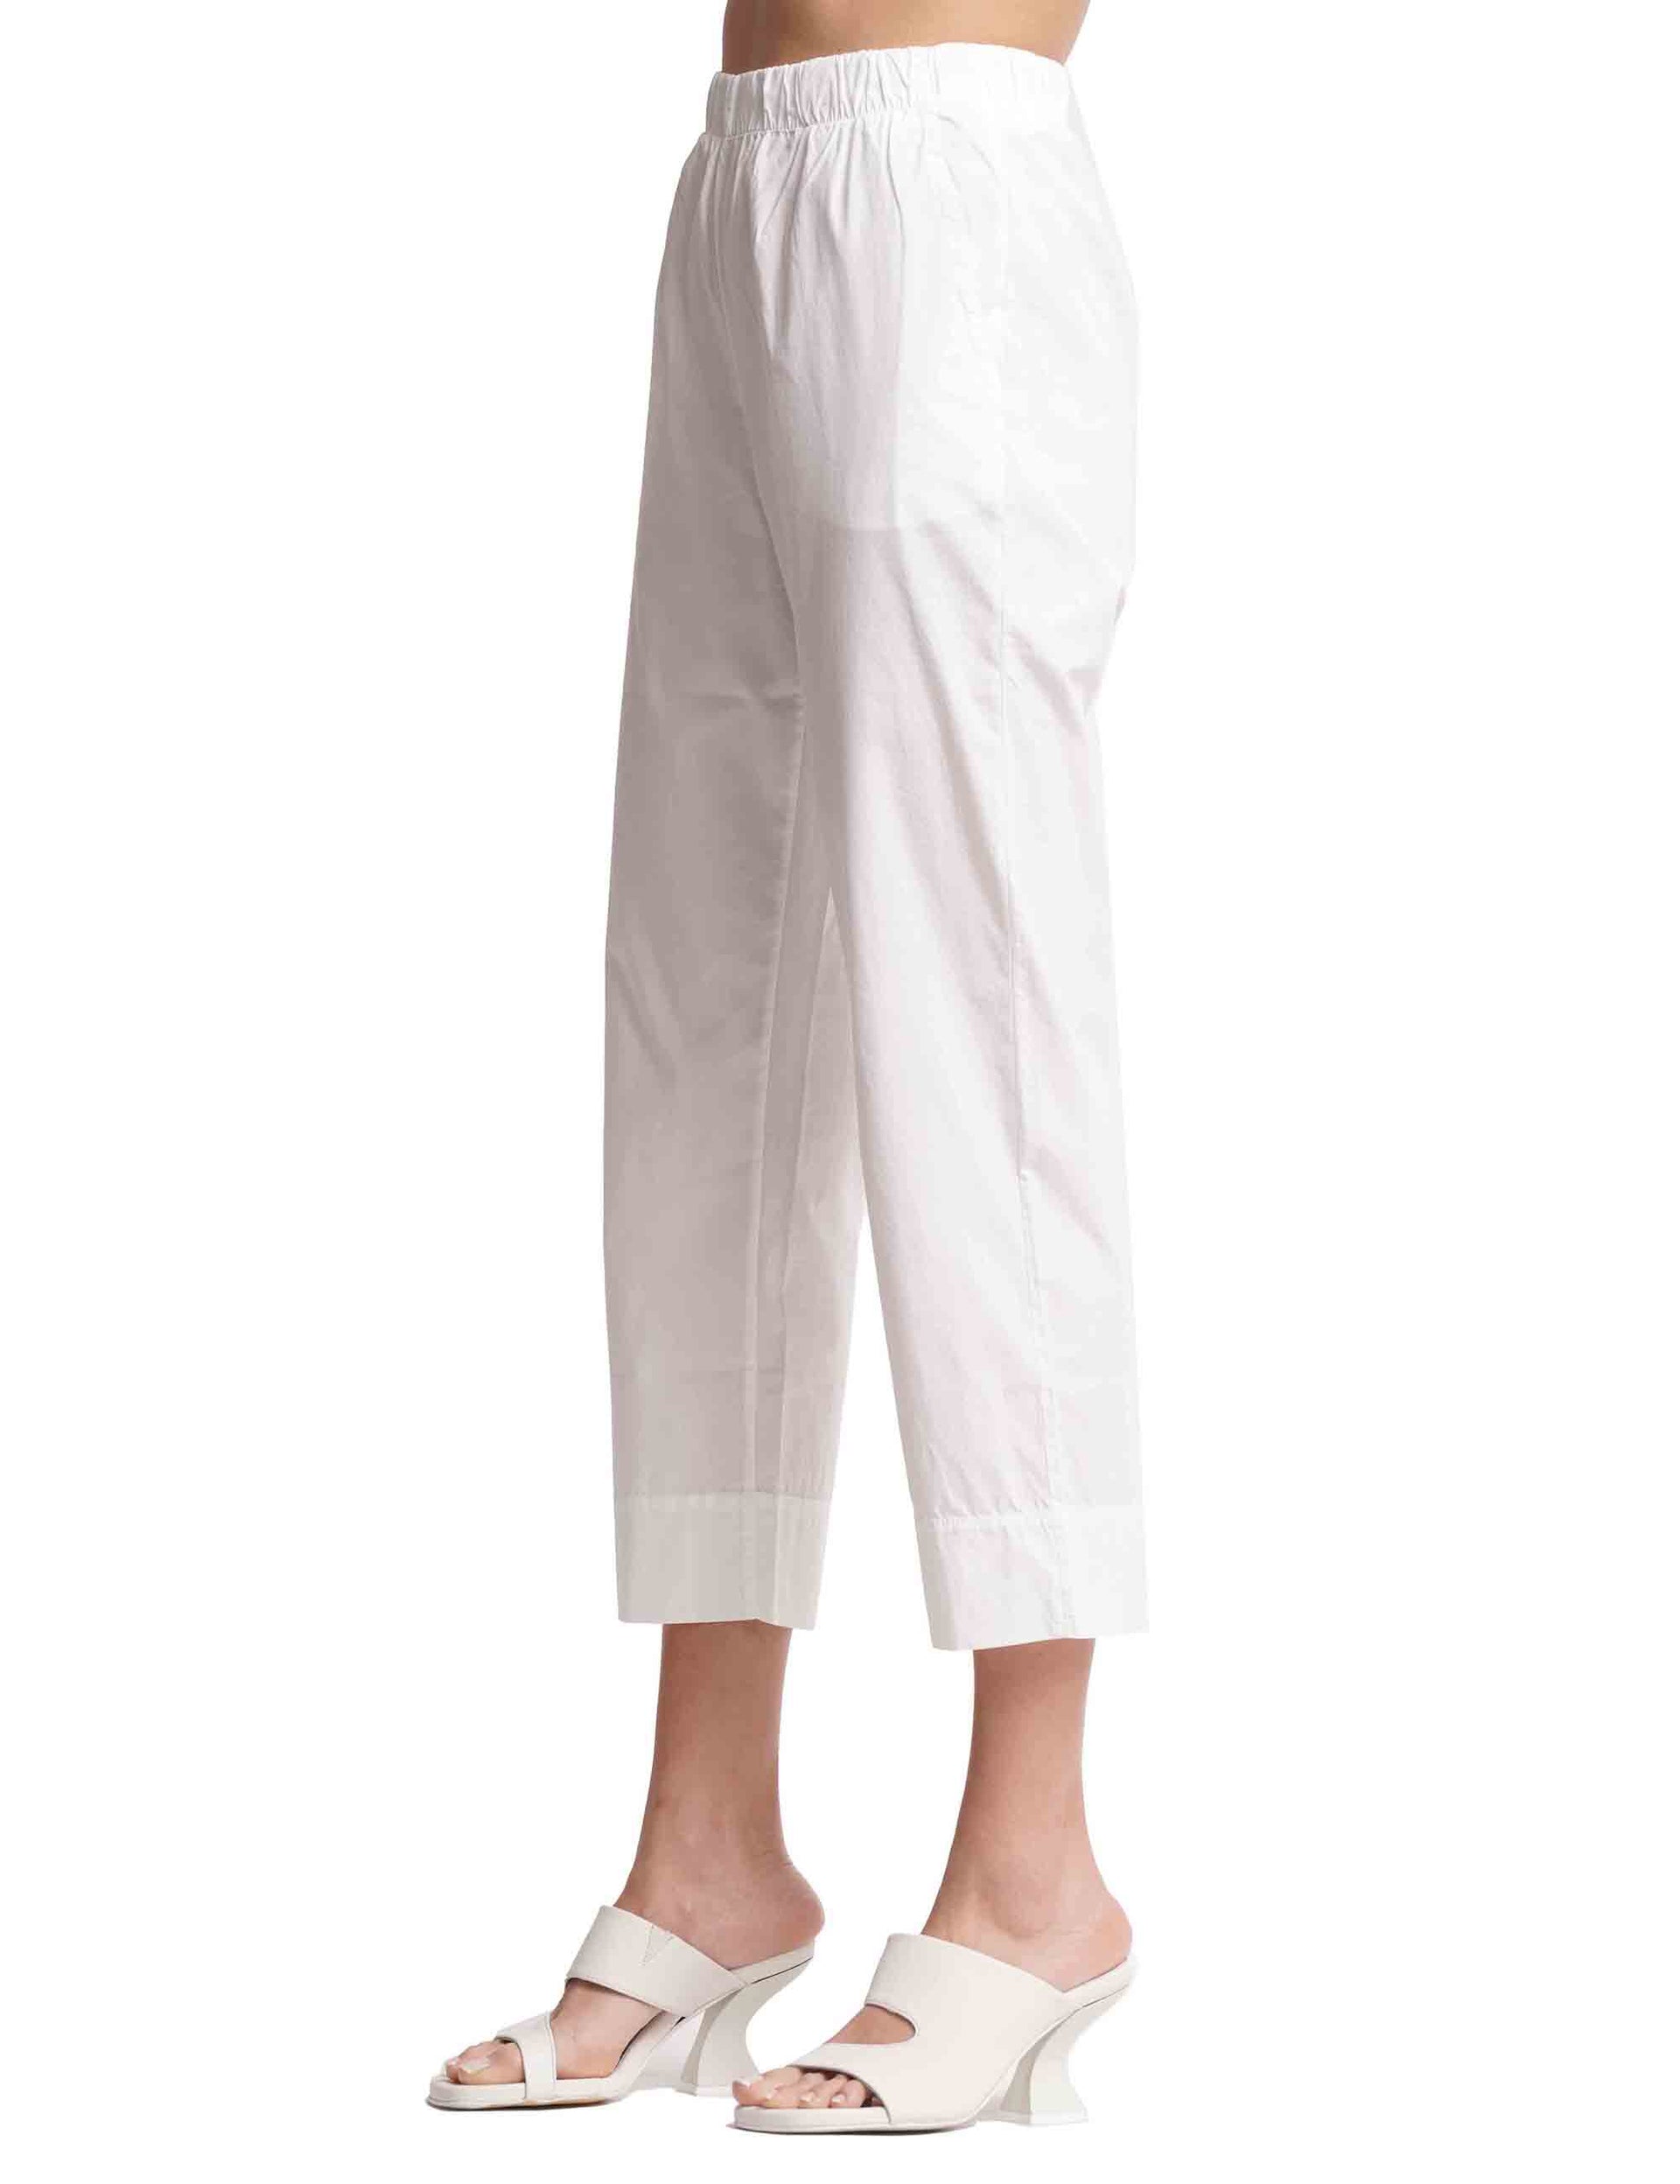 Pantaloni donna in cotone bianco con elastico in vita